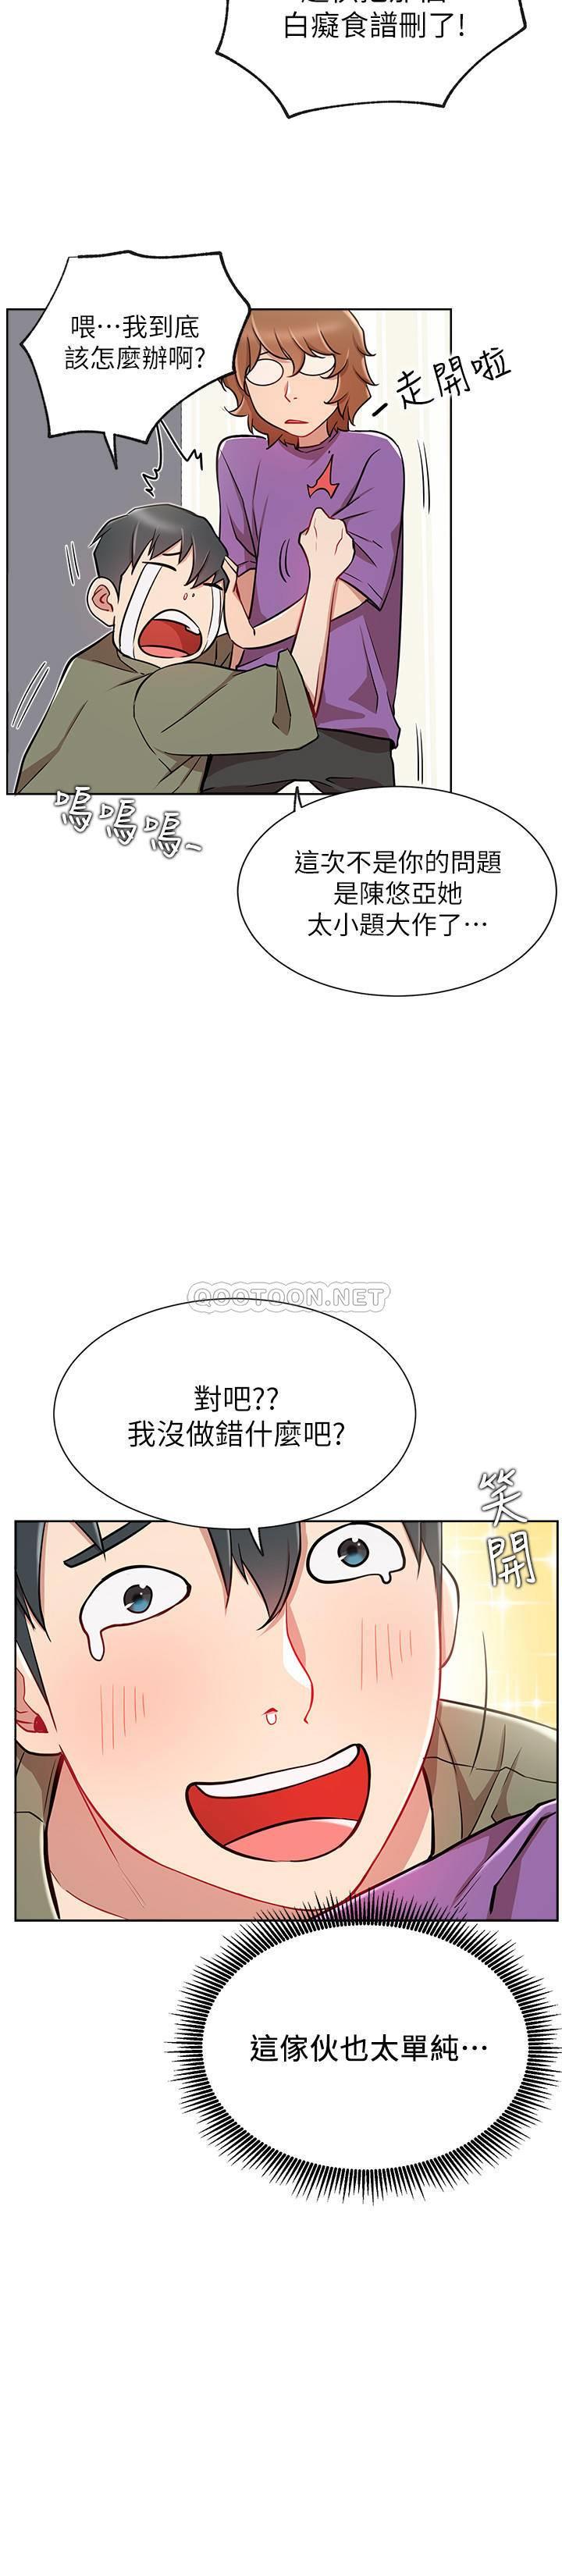 《网红私生活》漫画 第12话 - 耀威哥…不要走